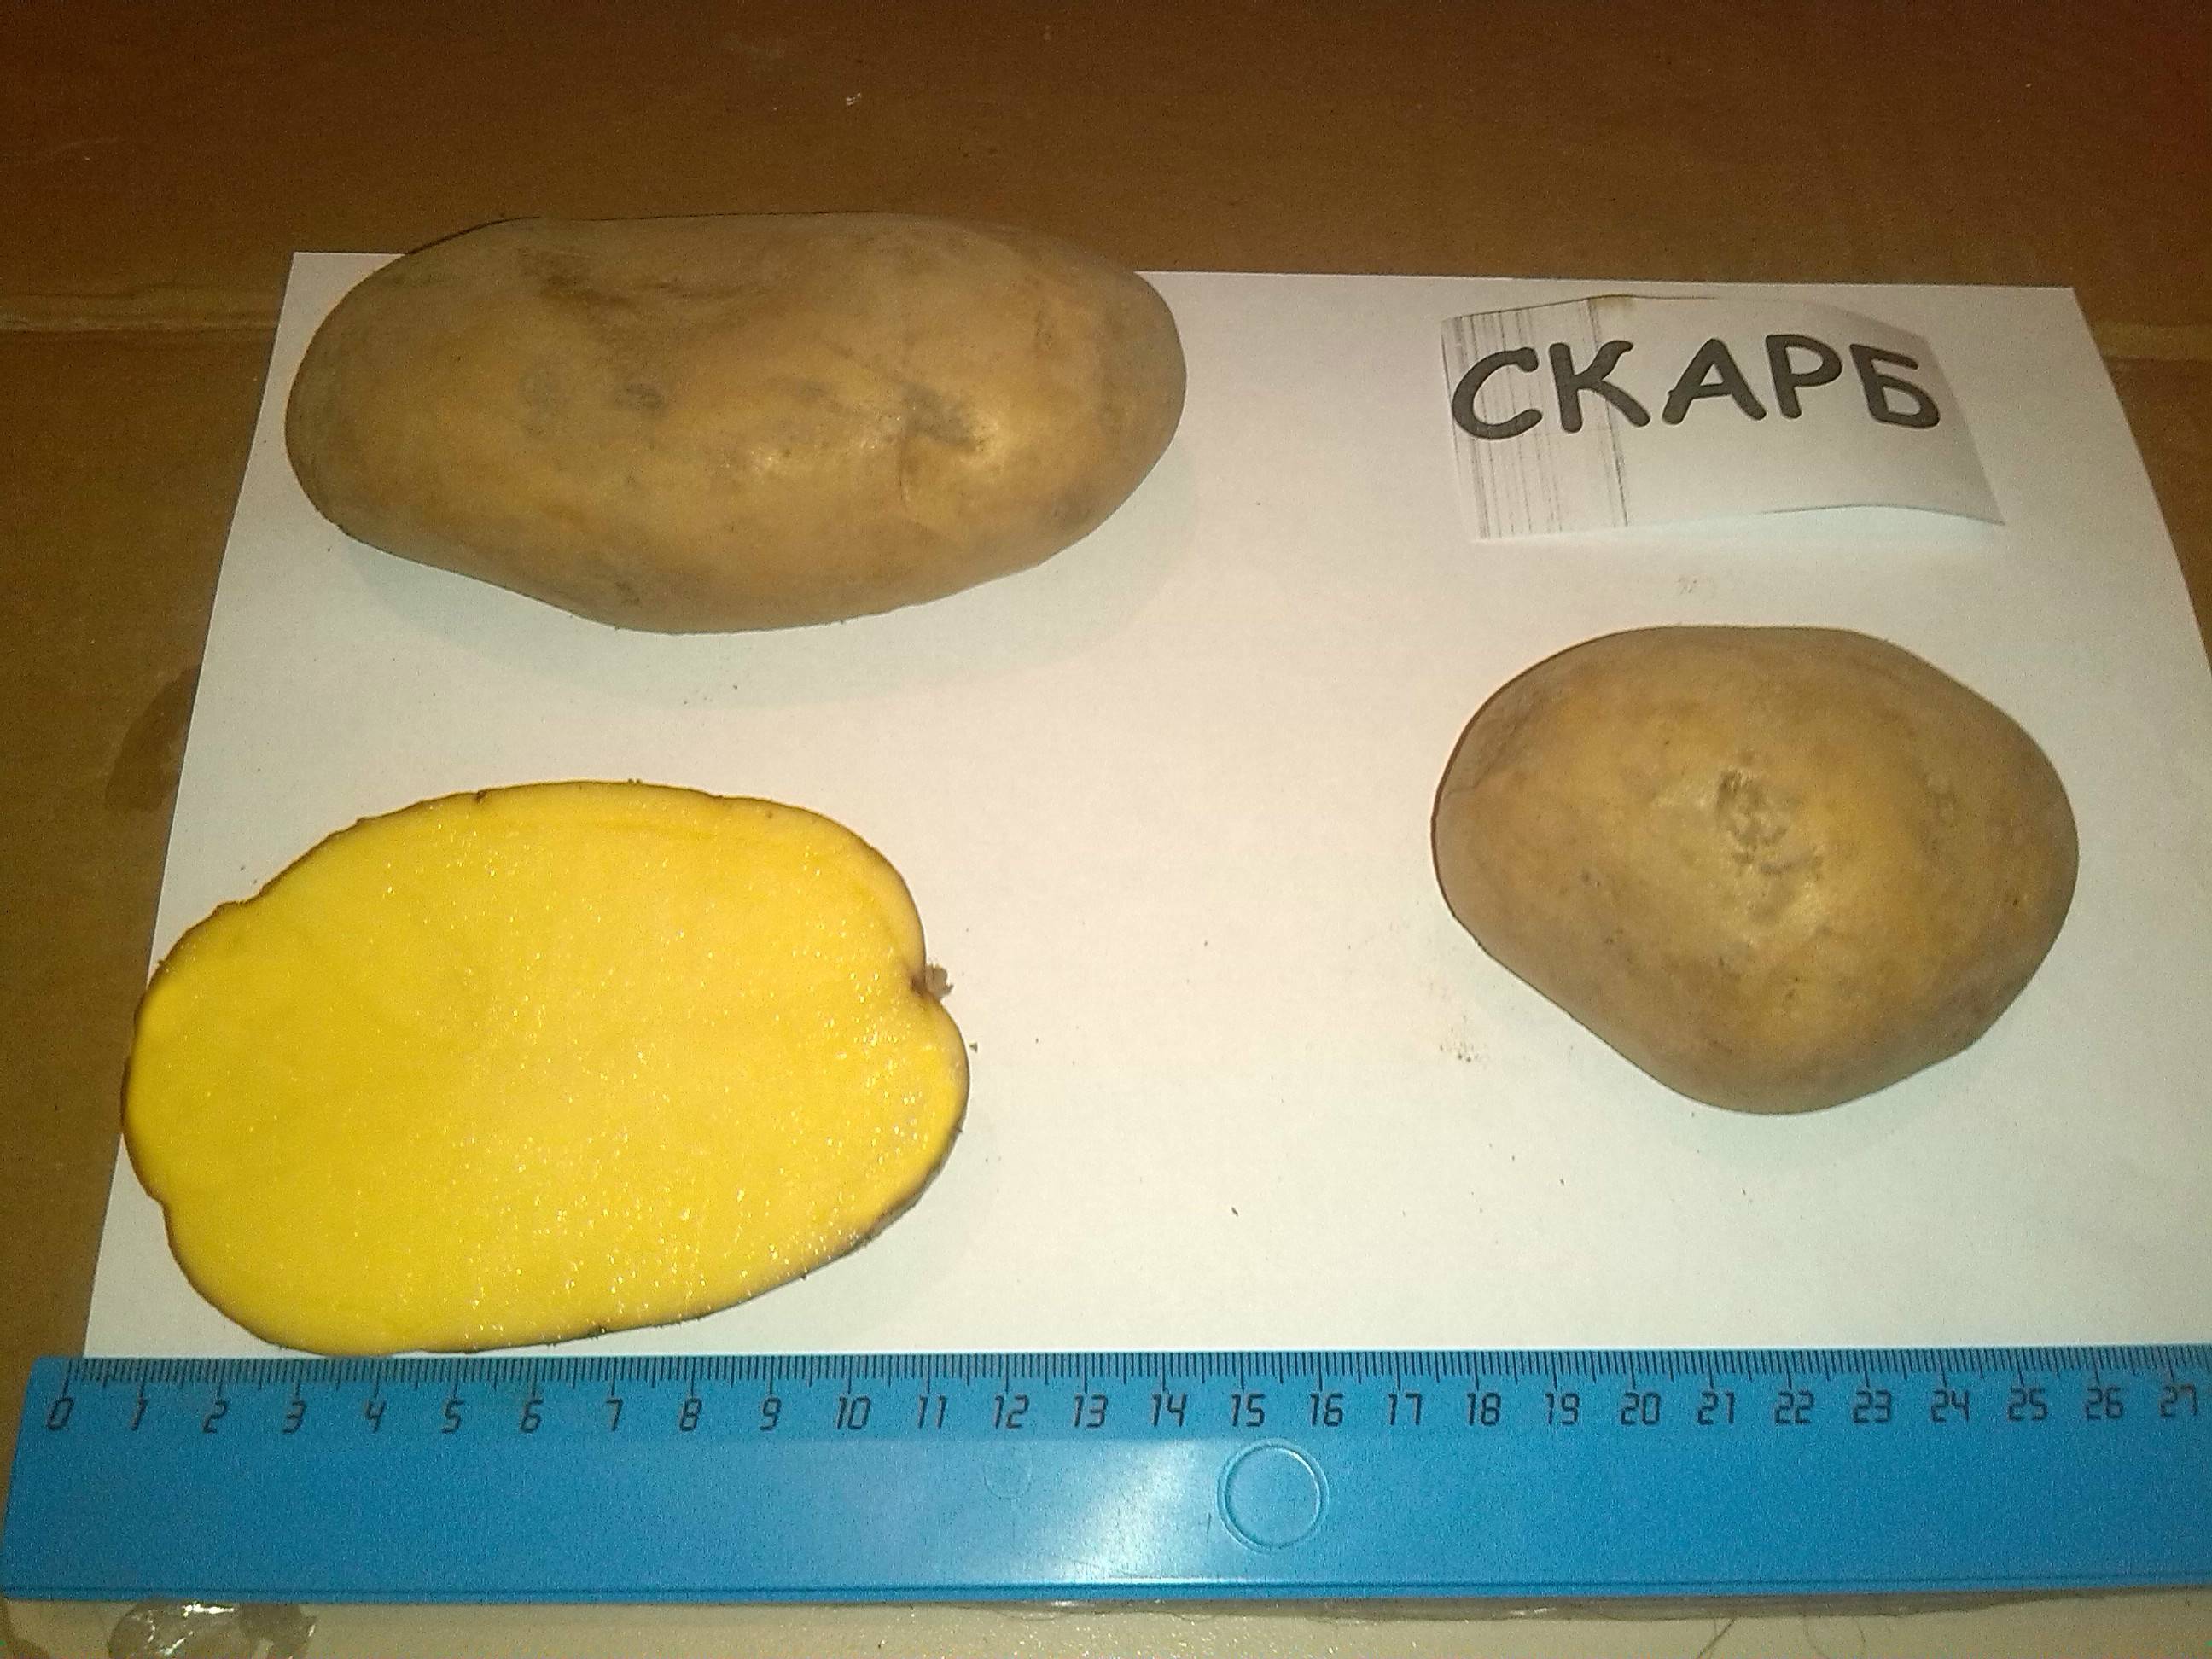 Описание и характеристика сорта картофеля скарб, правила посадки и ухода